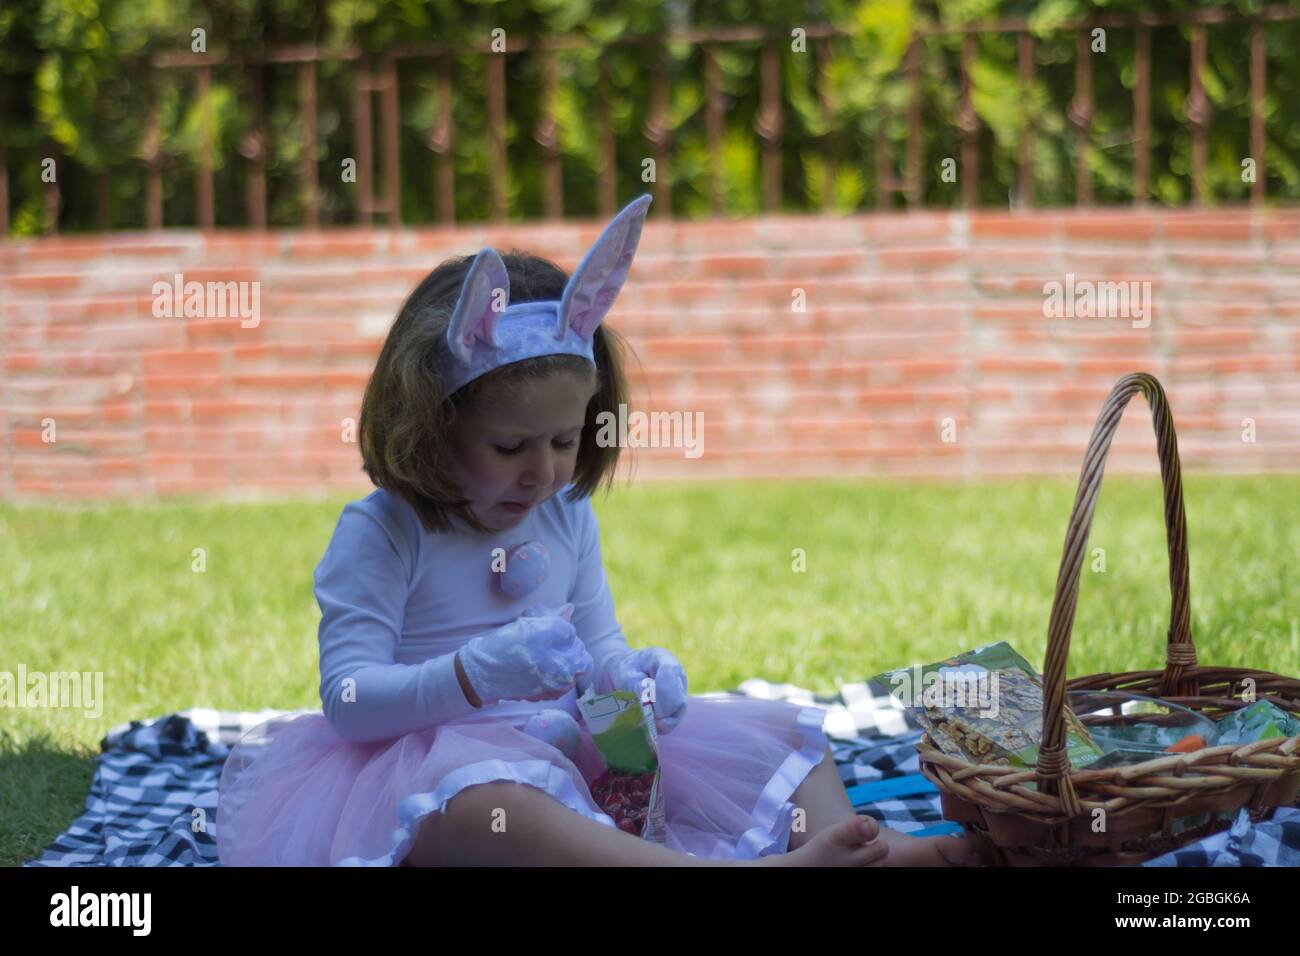 bambina in un costume coniglietto sta avendo un picnic nel giardino della sua casa. Foto Stock